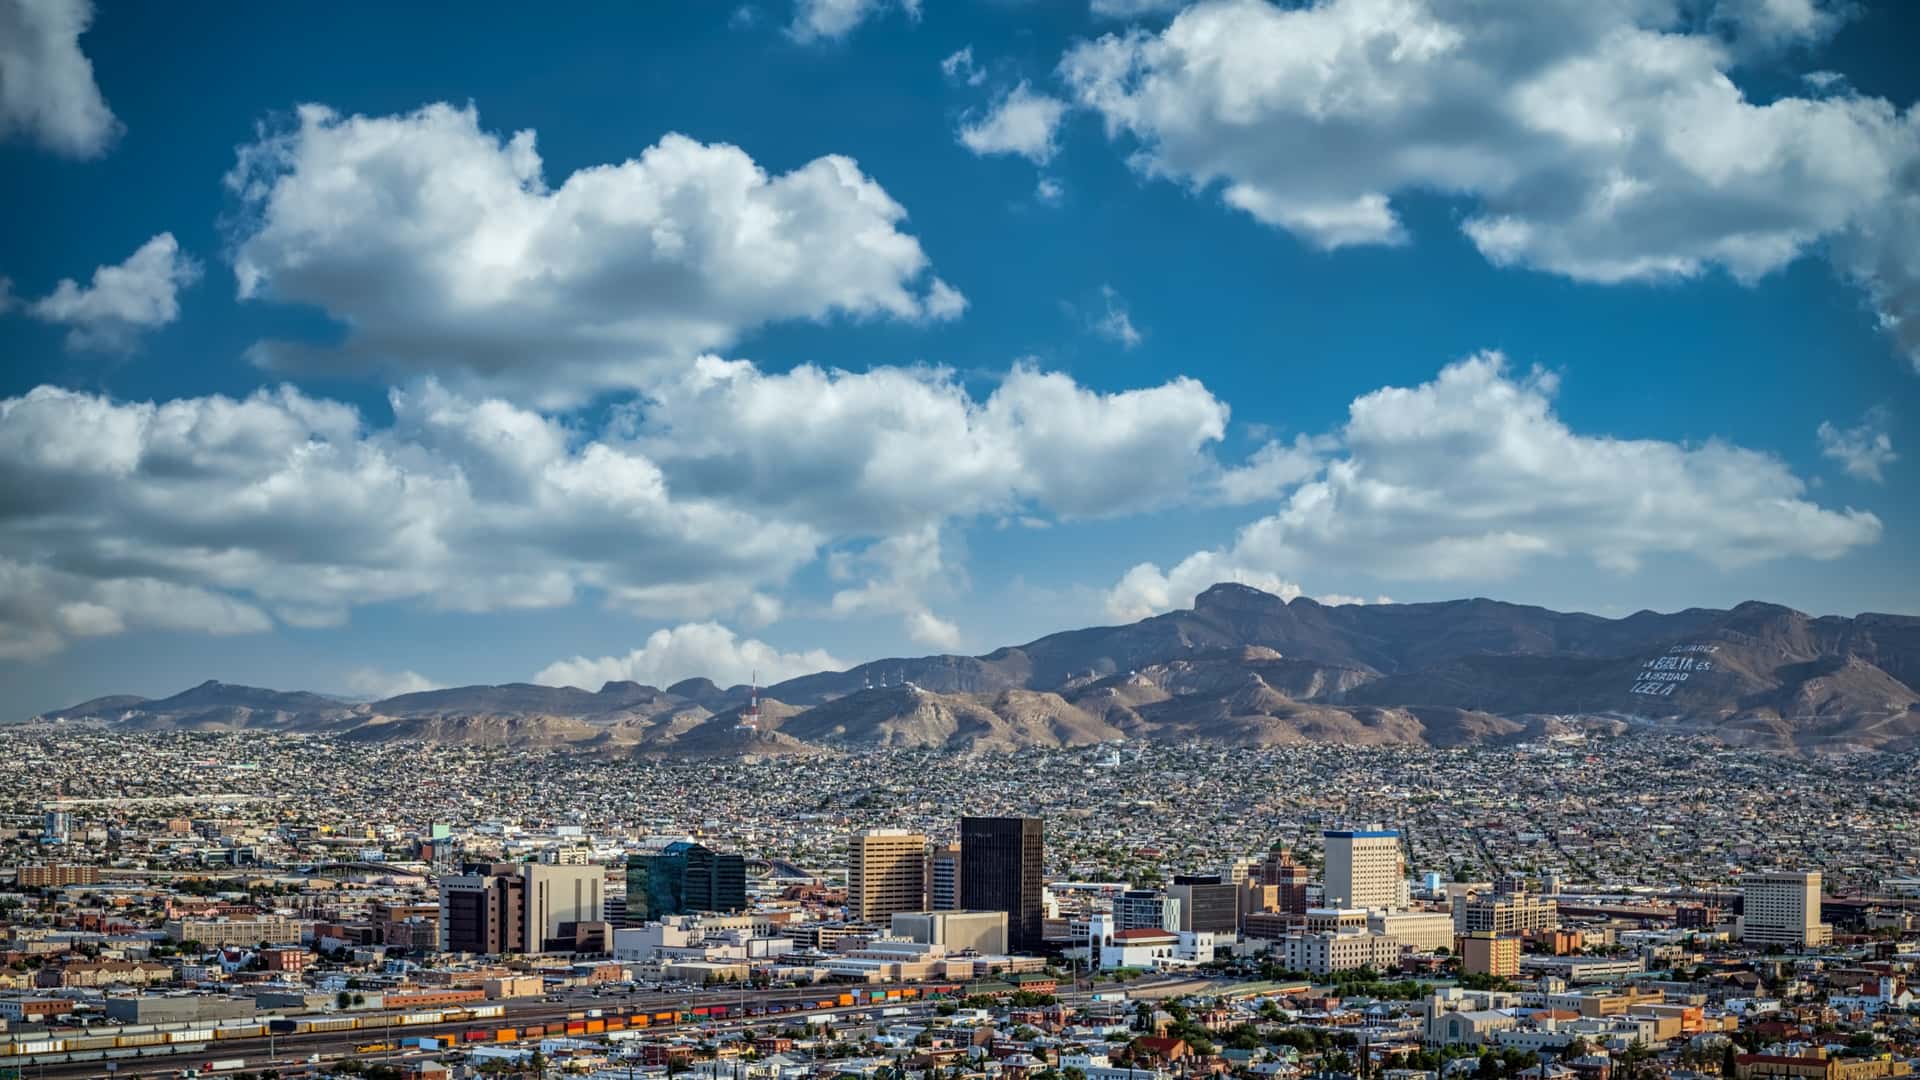 Paisaje desde el aire de Ciudad Juarez donde se puede encontrar una sucursal de axtel para contratar sus servicios telefónicos